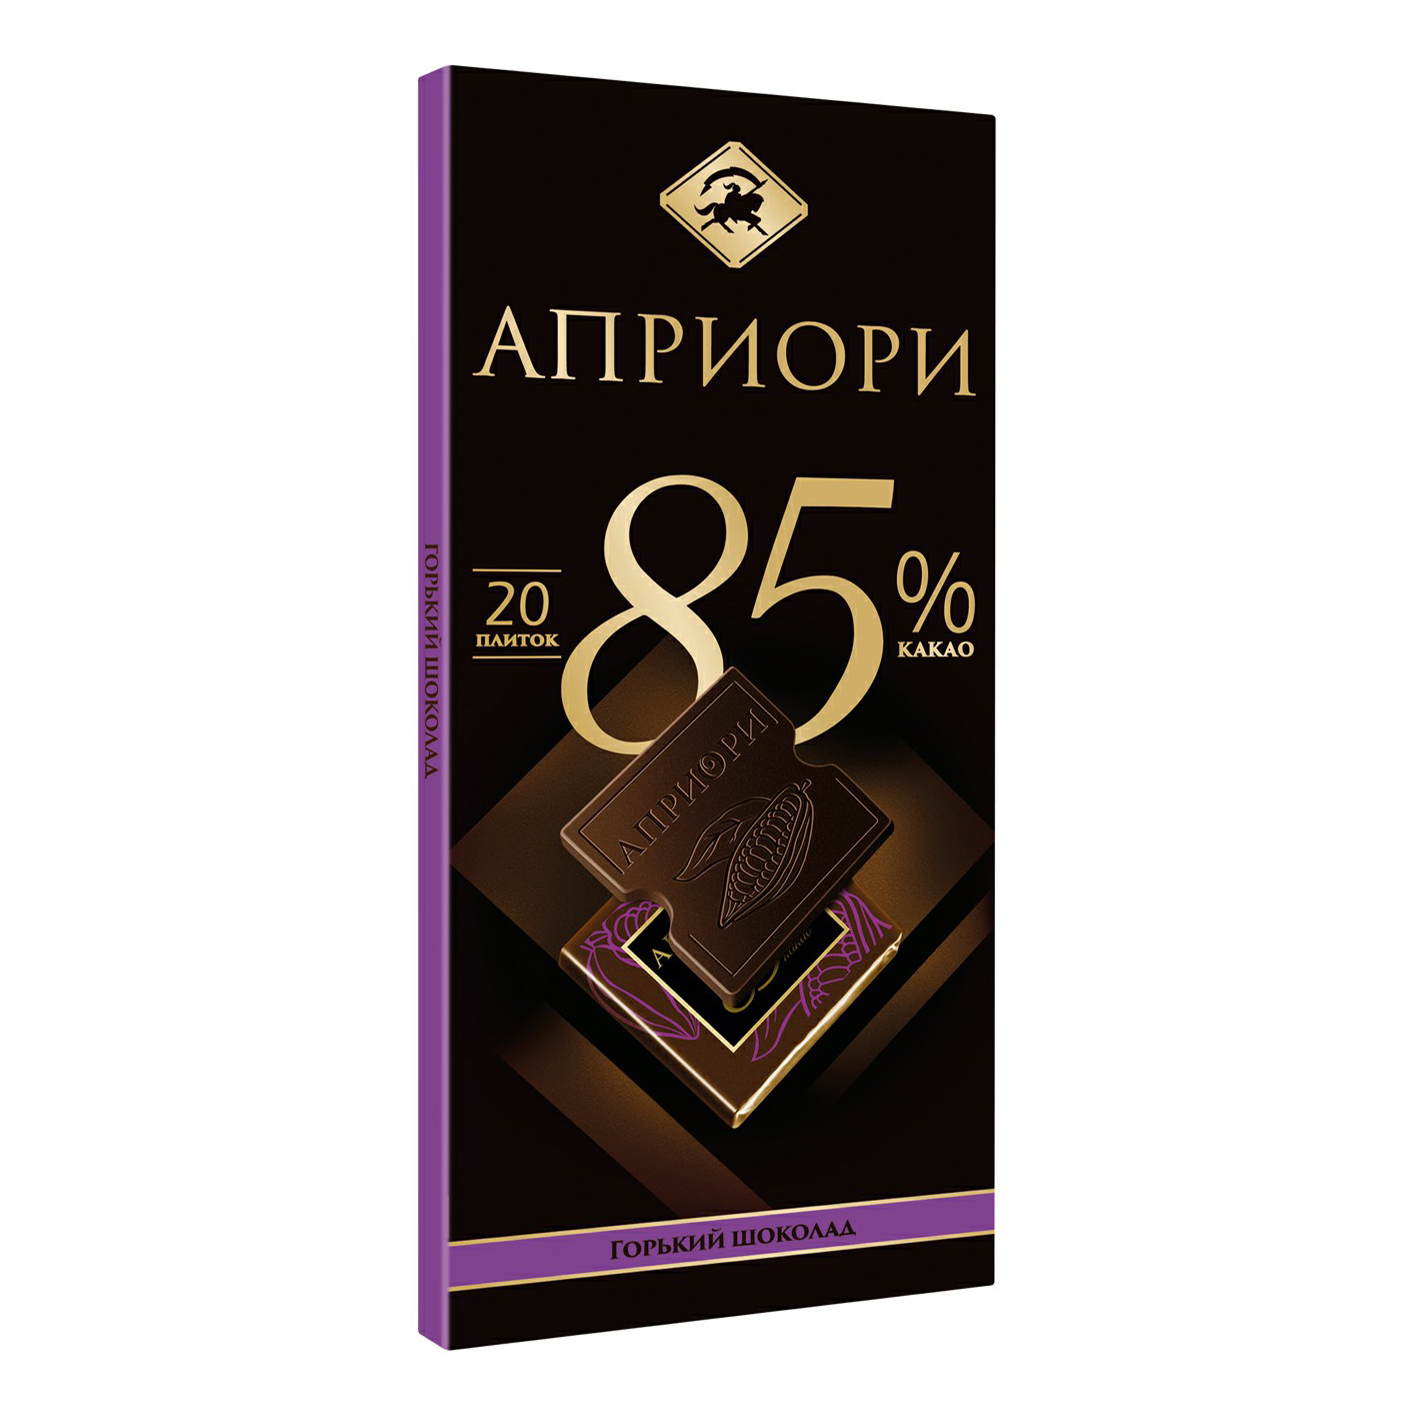 Шоколад горький верность качеству Априори 85% какао 100 г